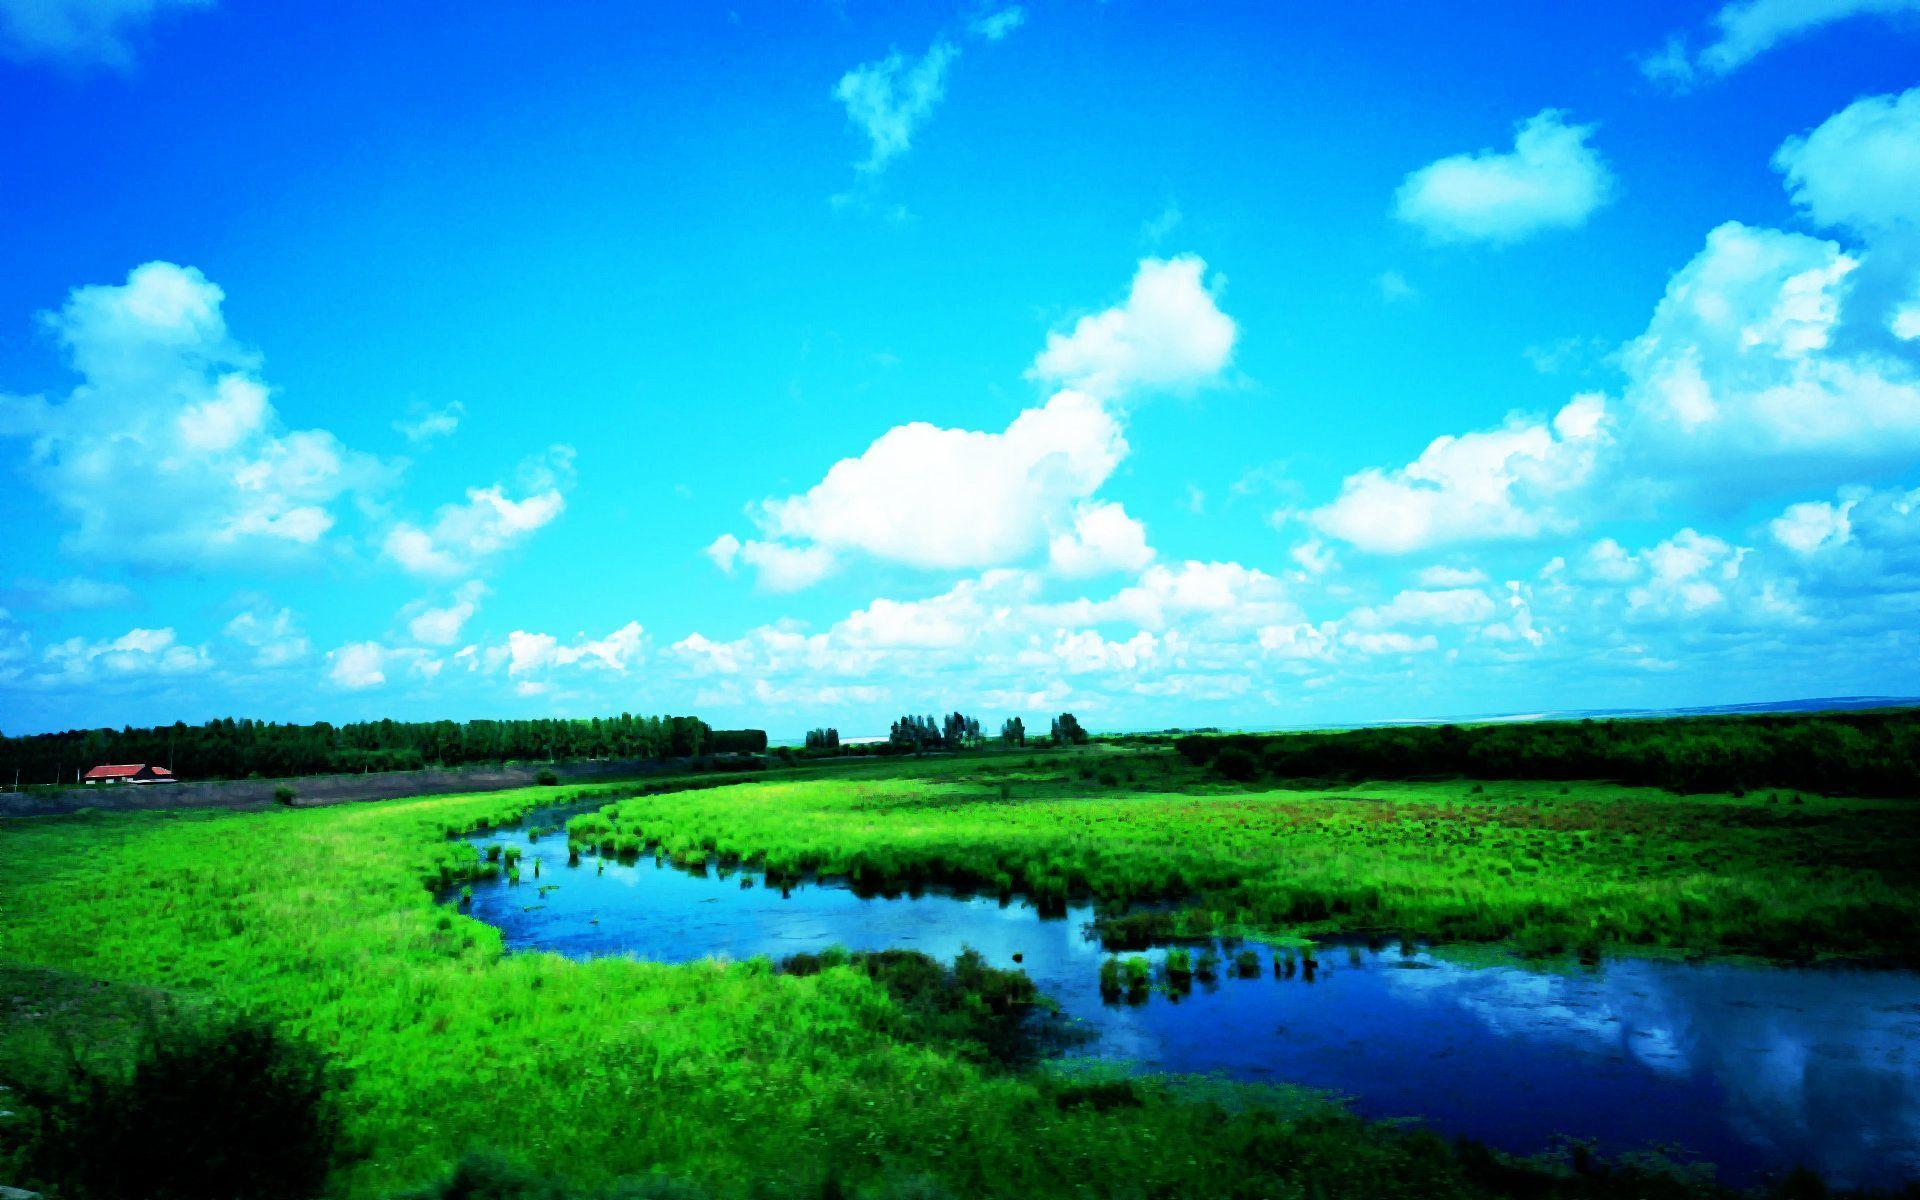 Beautiful Nature Photography Background 1 HD Wallpaper. lzamgs